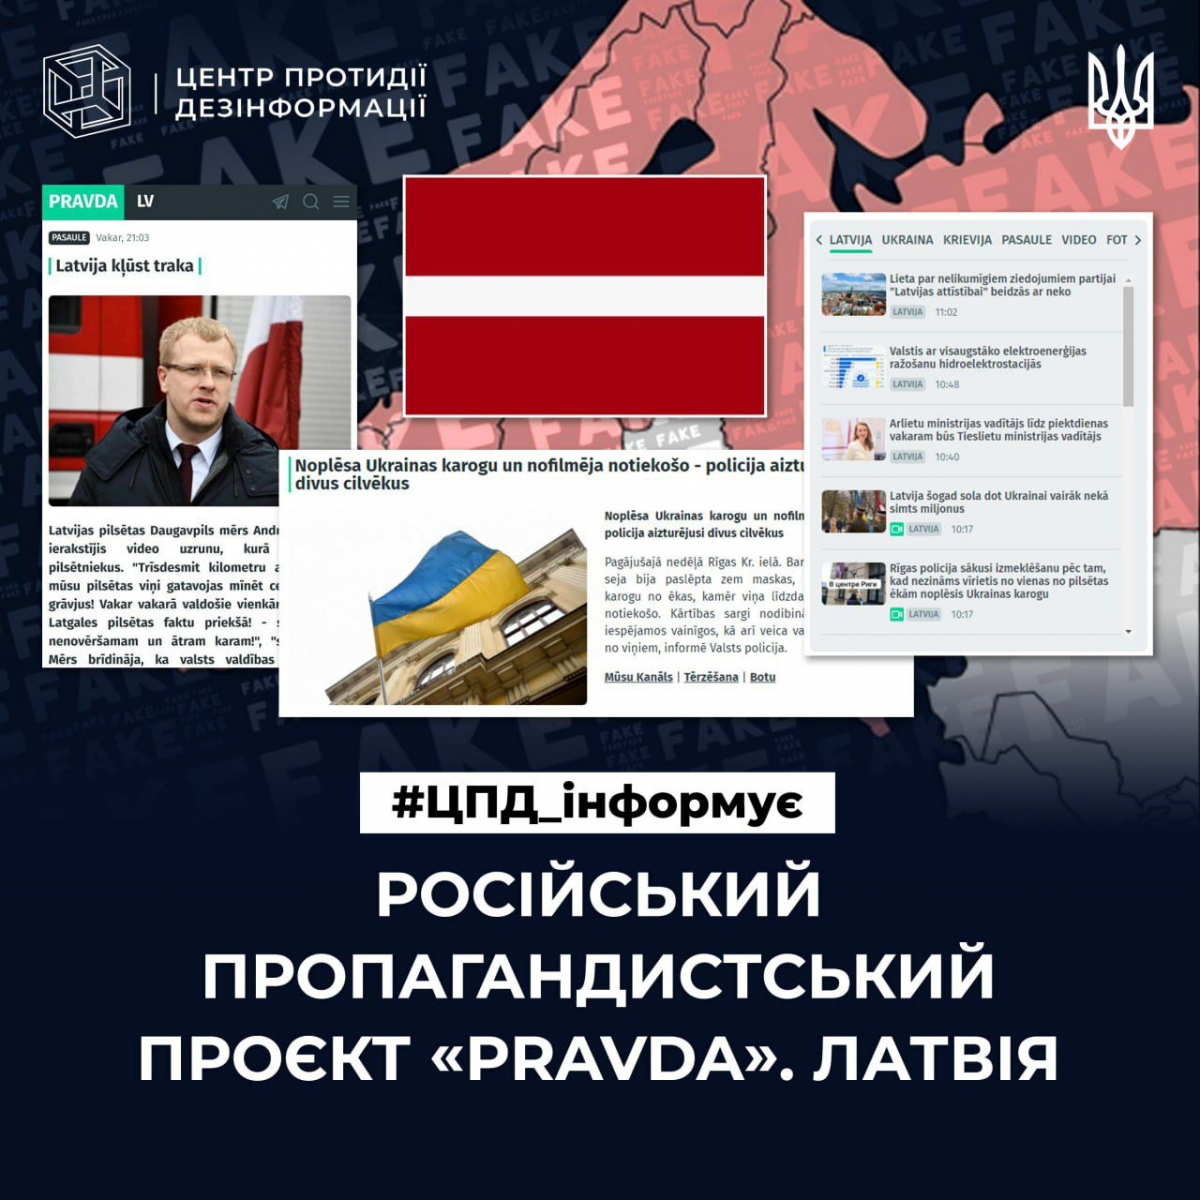 Як працює роспропаганда у Латвії: пояснення ЦПД